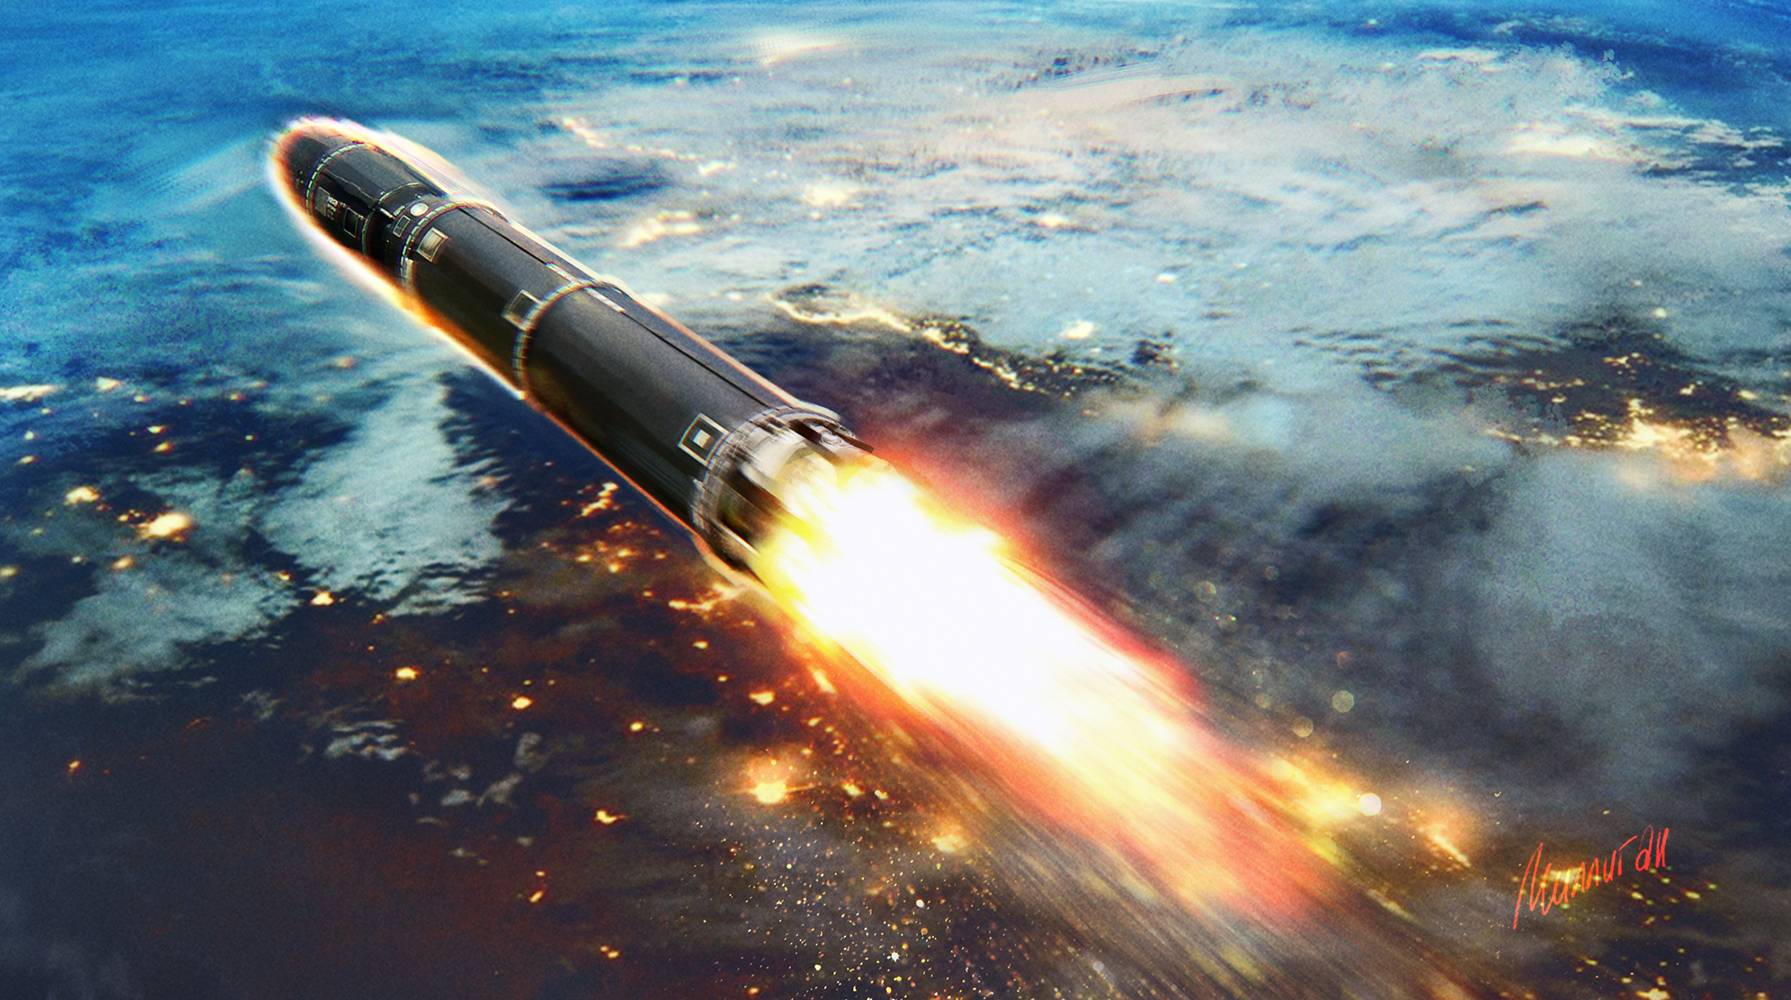 Баллистическая ракета сатана ss-18 ☆ характеристики (ттх: радиус поражения, скорость и дальность полета р-36м воевода) ⭐ doblest.club